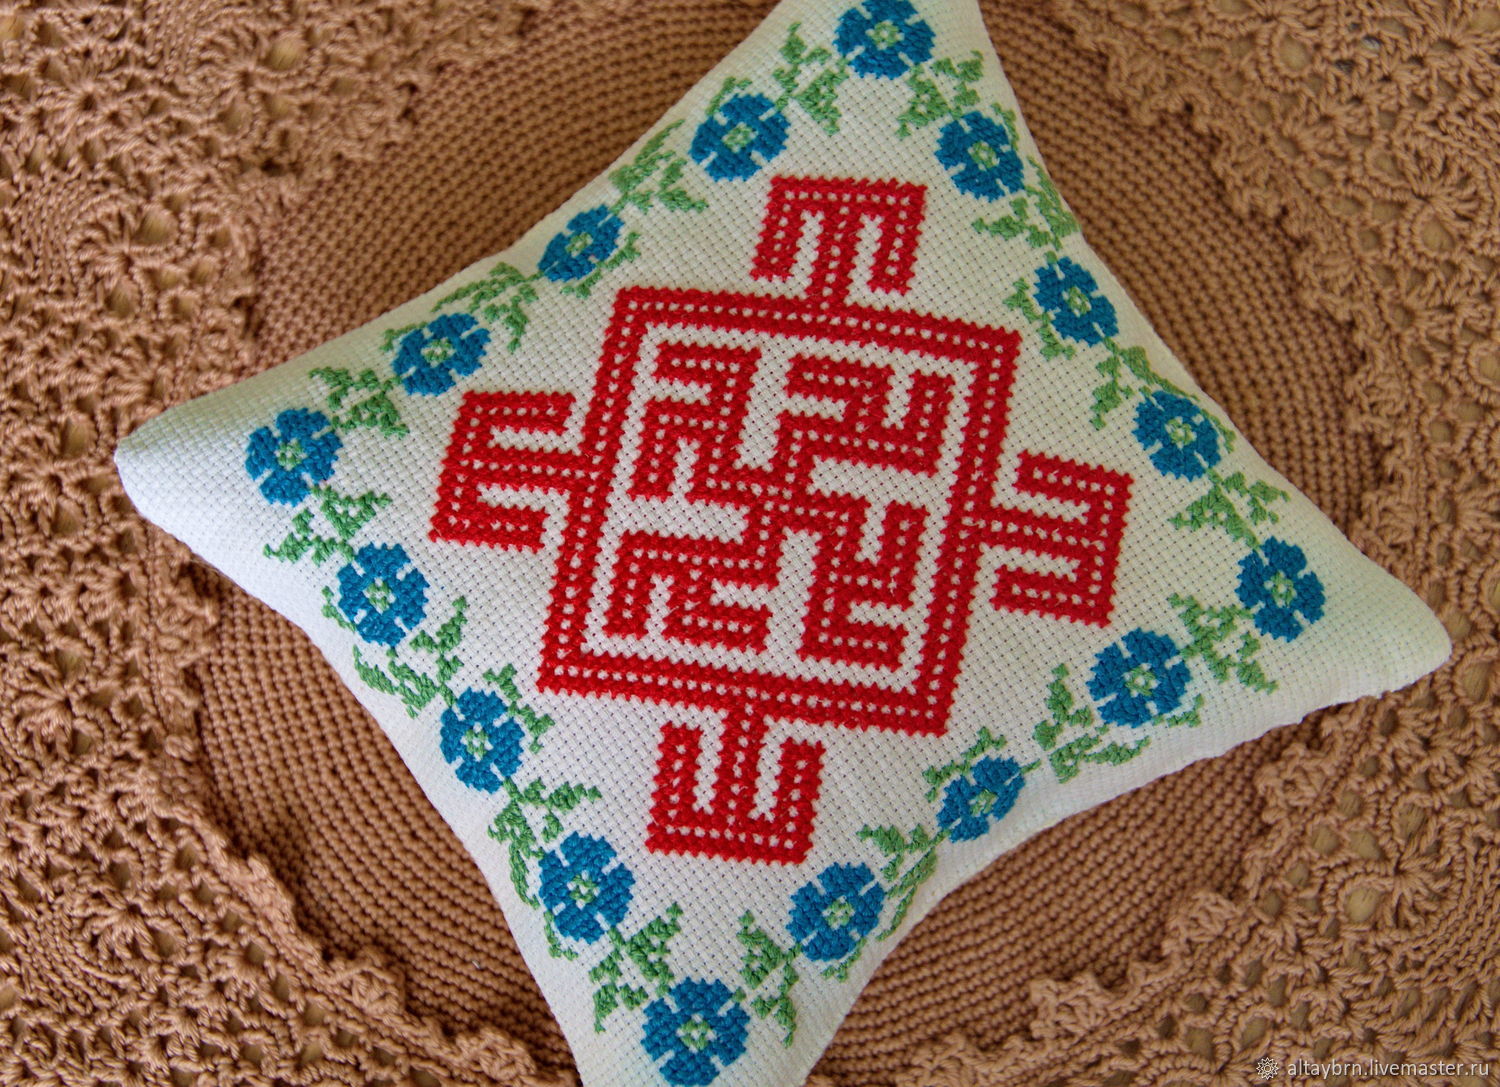 Схемы вышивки славянских оберегов крестом или бисером и их значение, когда вышивать, общие правила